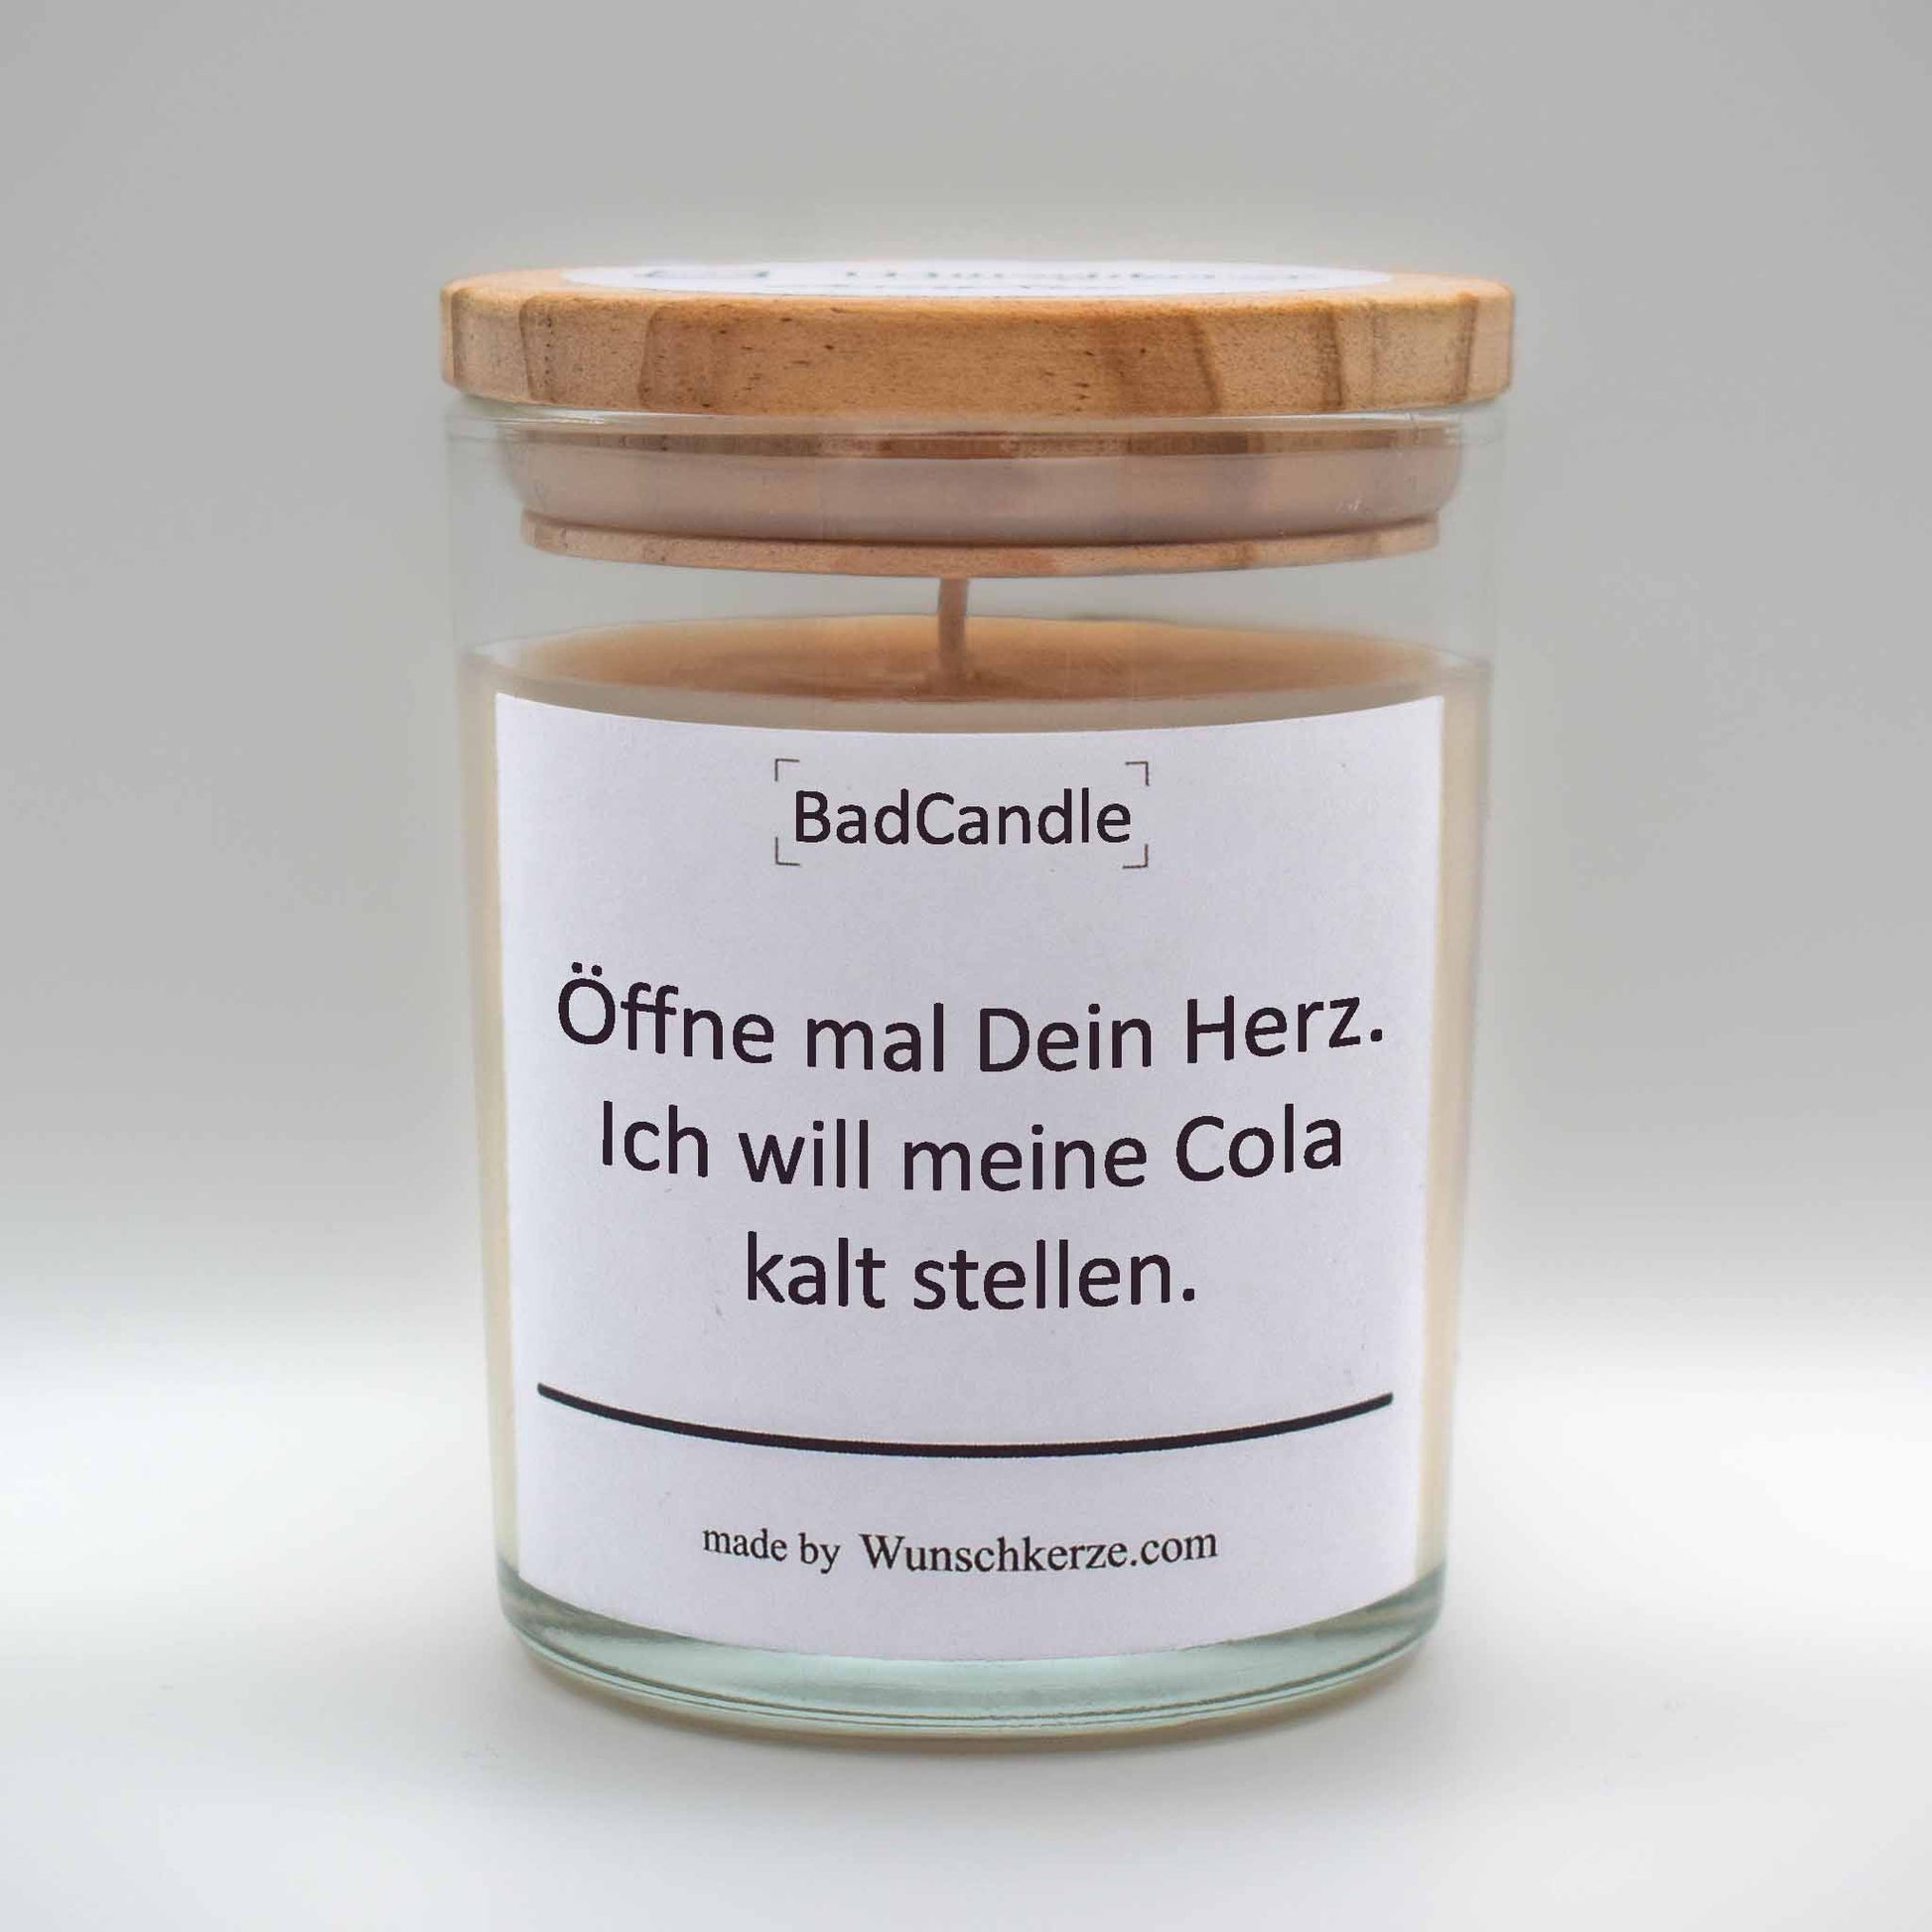 Soja Duftkerze im Glas mit Deckel aus Kiefernholz mit einem Label. Aufschrift: BadCandle - Öffne mal dein Herz. Ich will meine Cola kalt stellen.